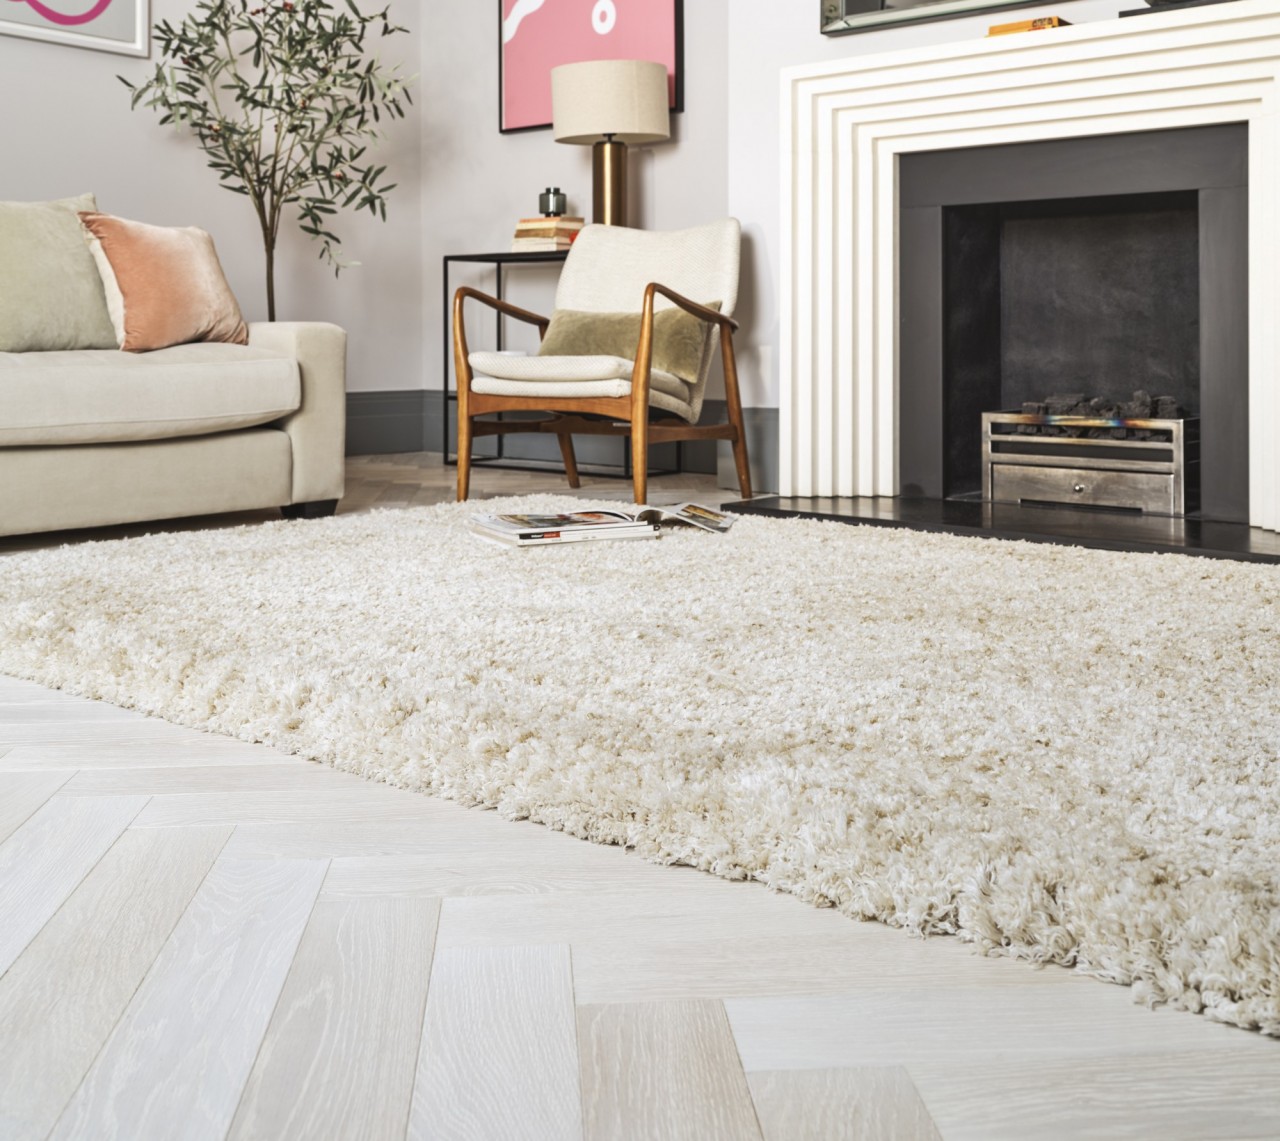 O tapete é perfeito para o seu lar. Com elegância e sofisticação, ele adiciona charme e beleza à decoração.